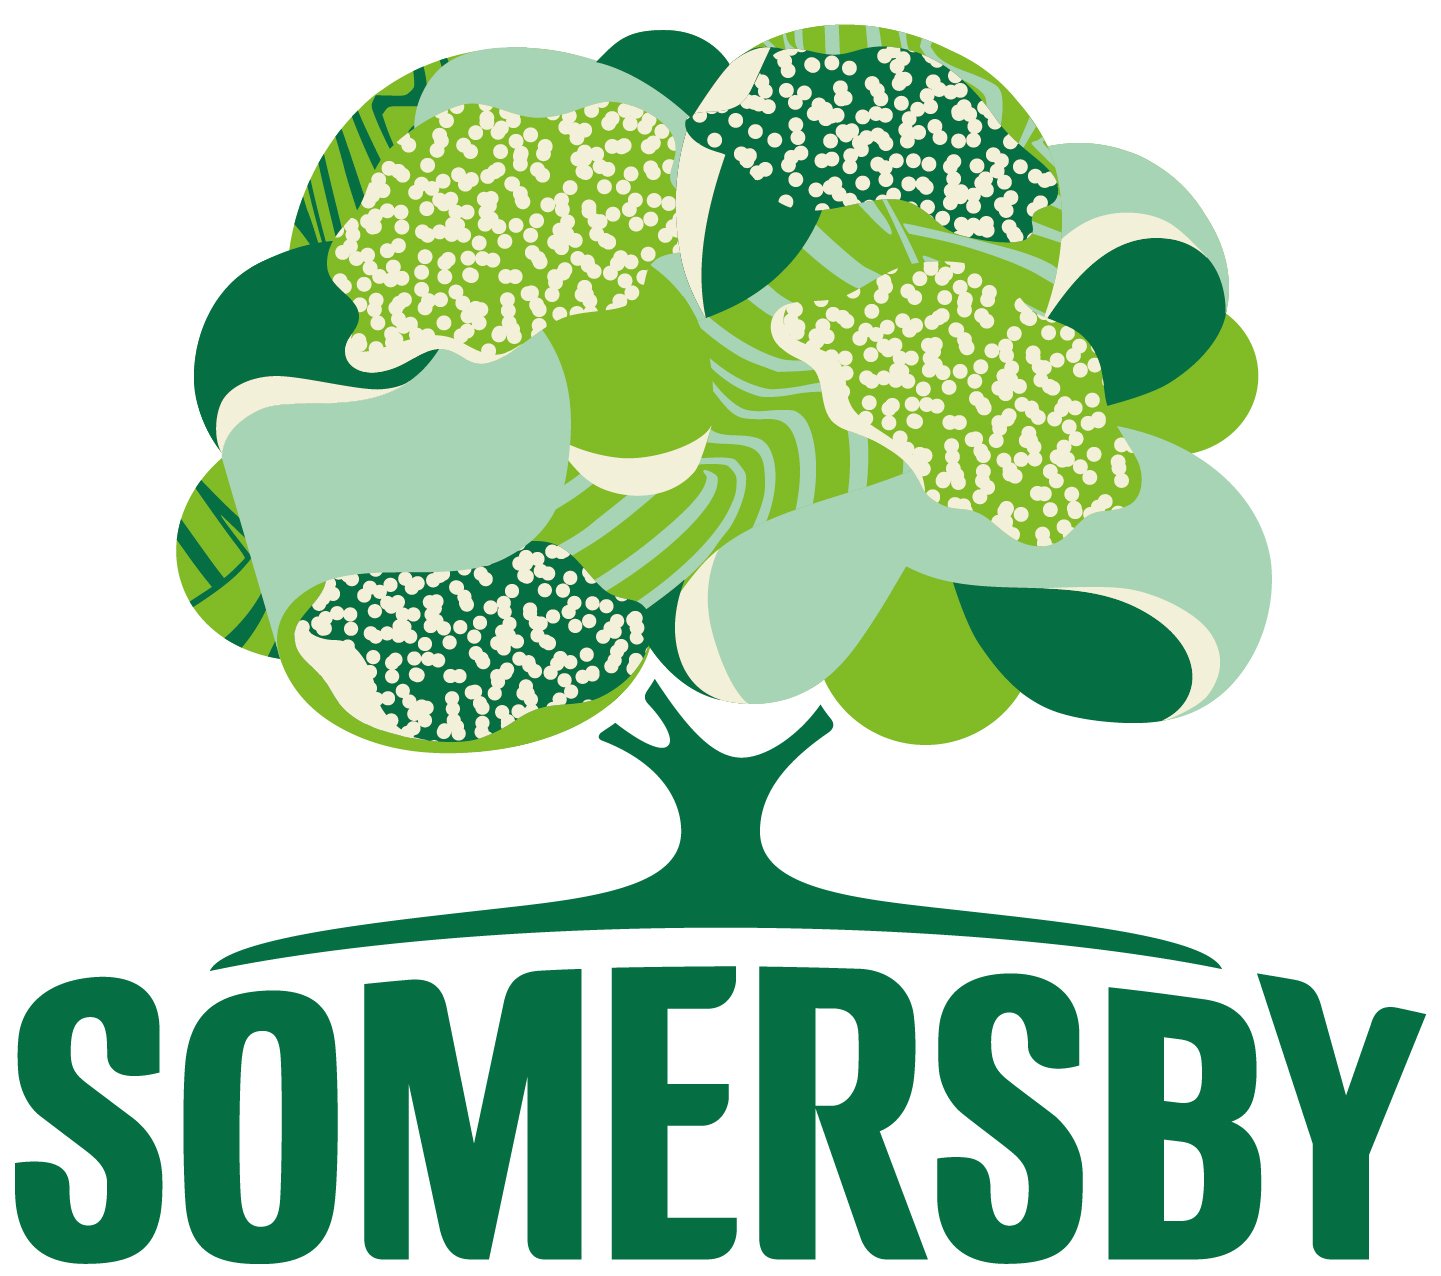 Somersby_Fruit illustration_Elderflower & Lime_Packaging_Spots-01.jpg